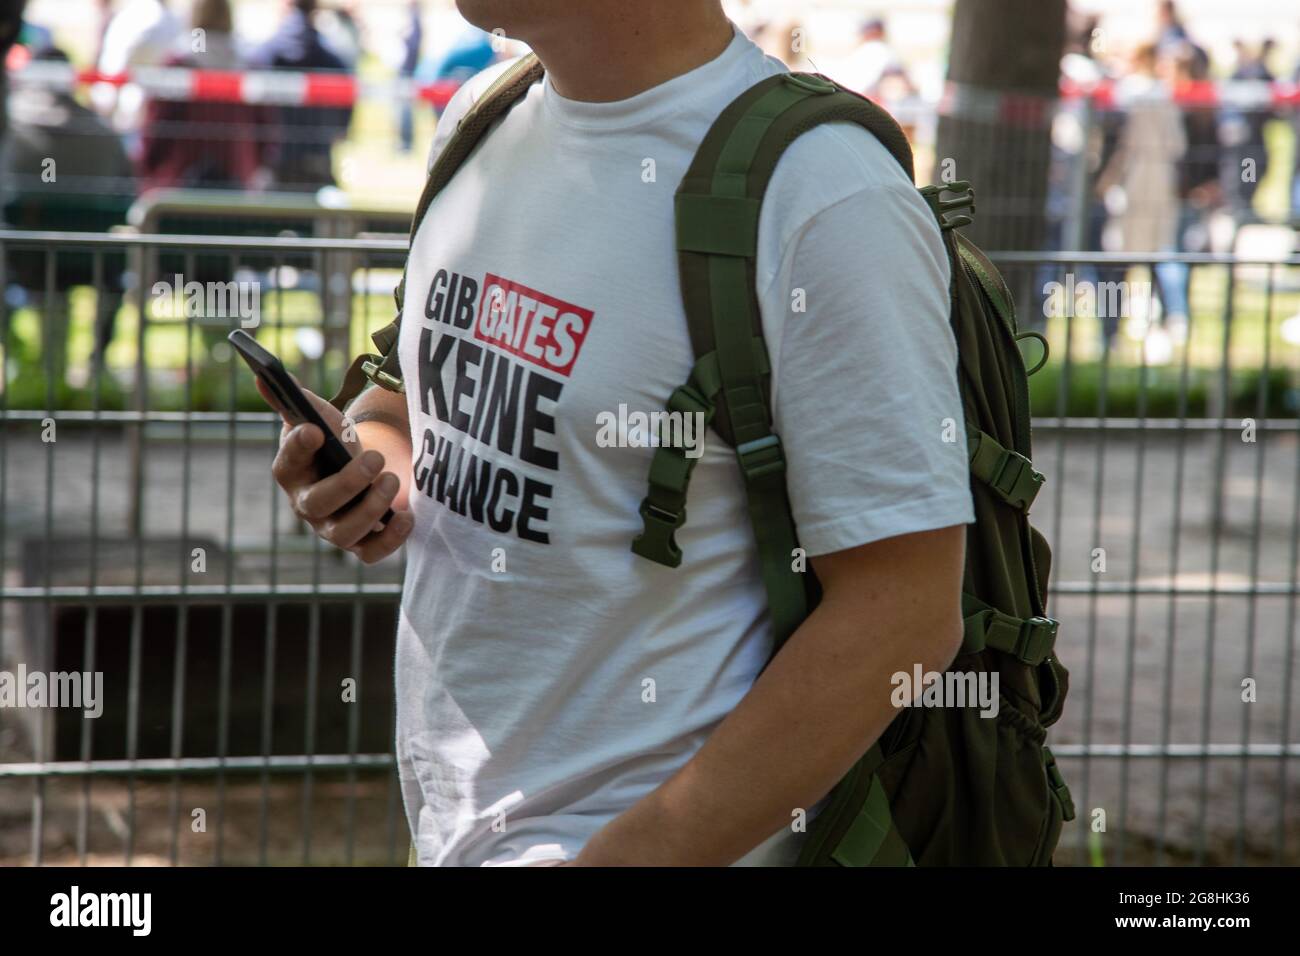 T-shirt Aktivist mit « Gib Gates keine chance ». AM 16. Mai 2020 haben auf  der Theresienwiese 1000 Menschen gegen die Coronamaßnahmen demonstriert.  Drum herum haben sich weitere Tausende versammelt. Auf der